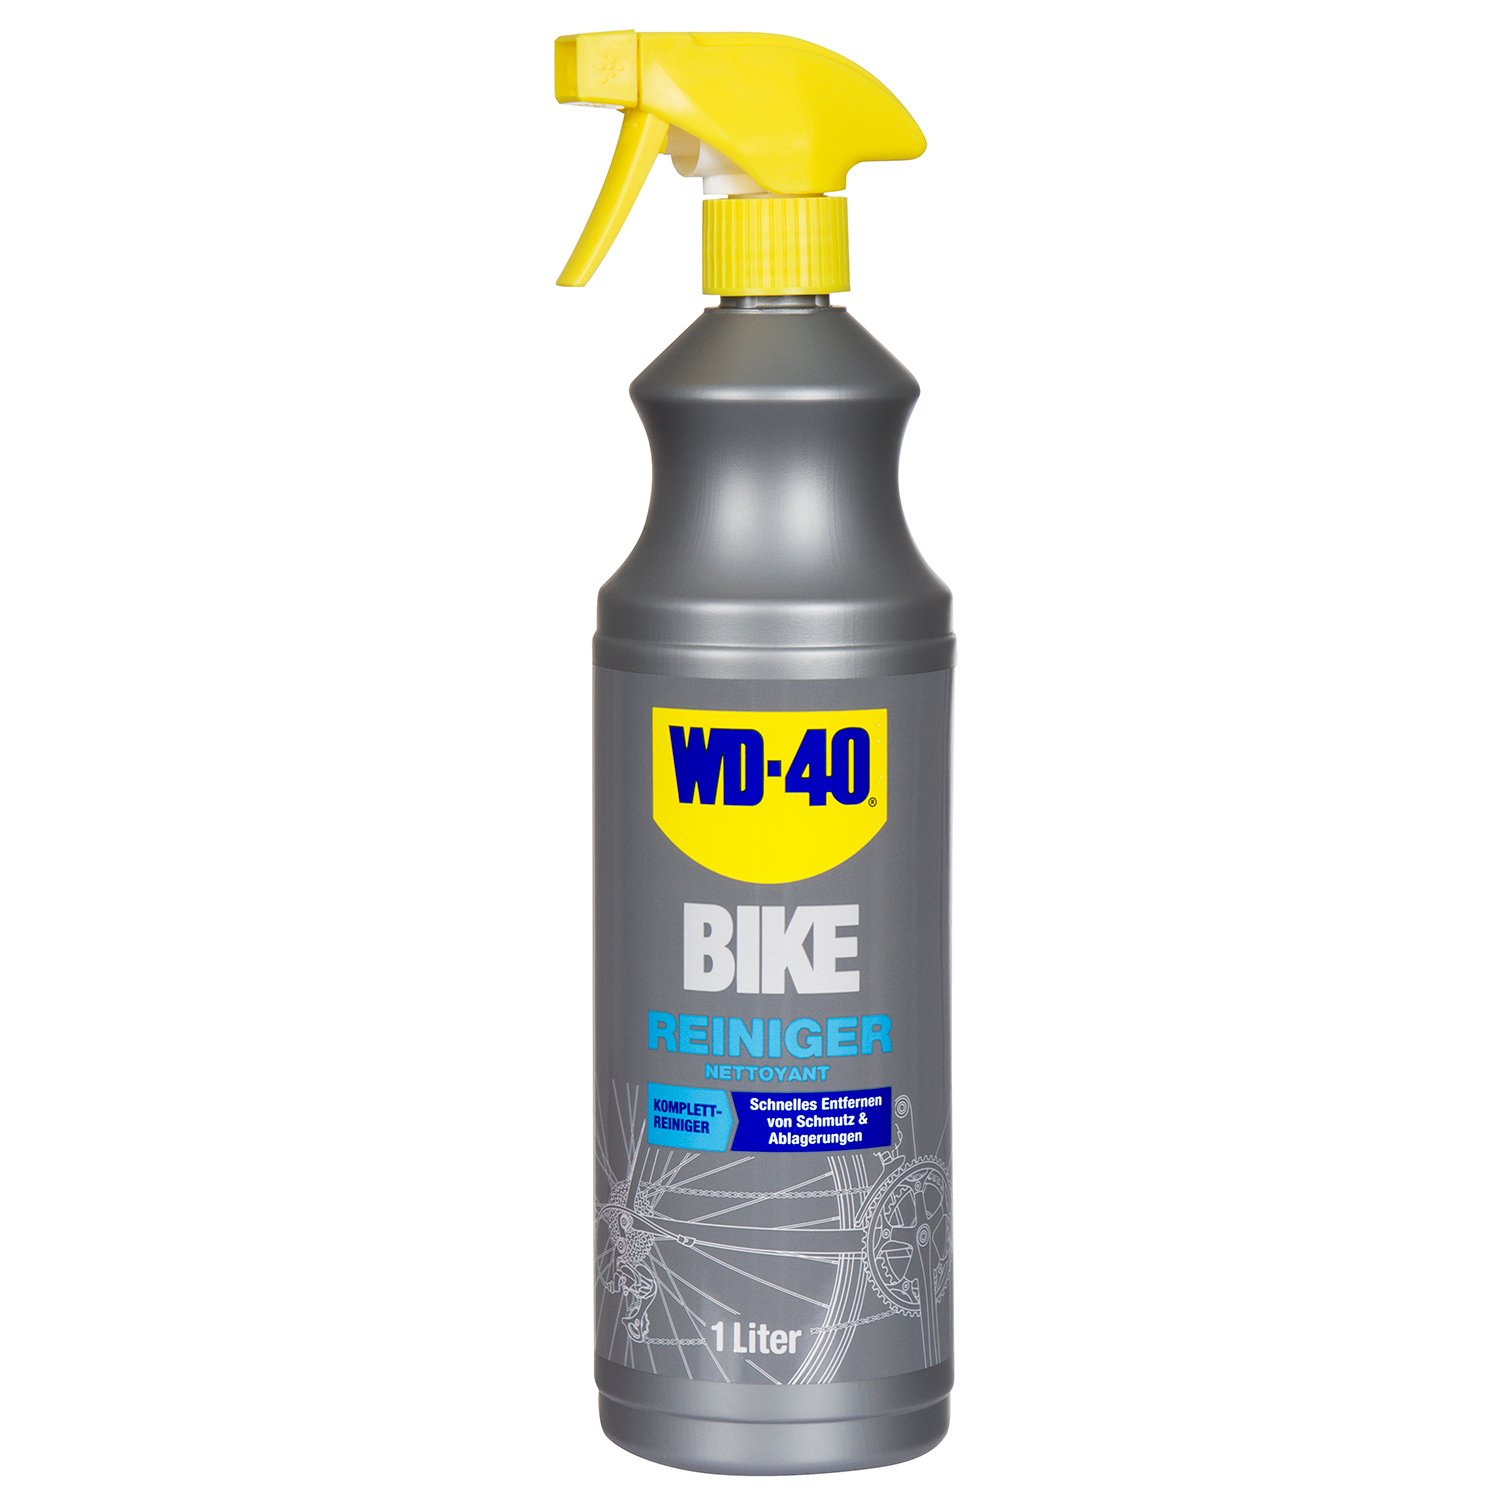 WD-40 Bike-Reiniger  Sprayflasche, 1 Liter